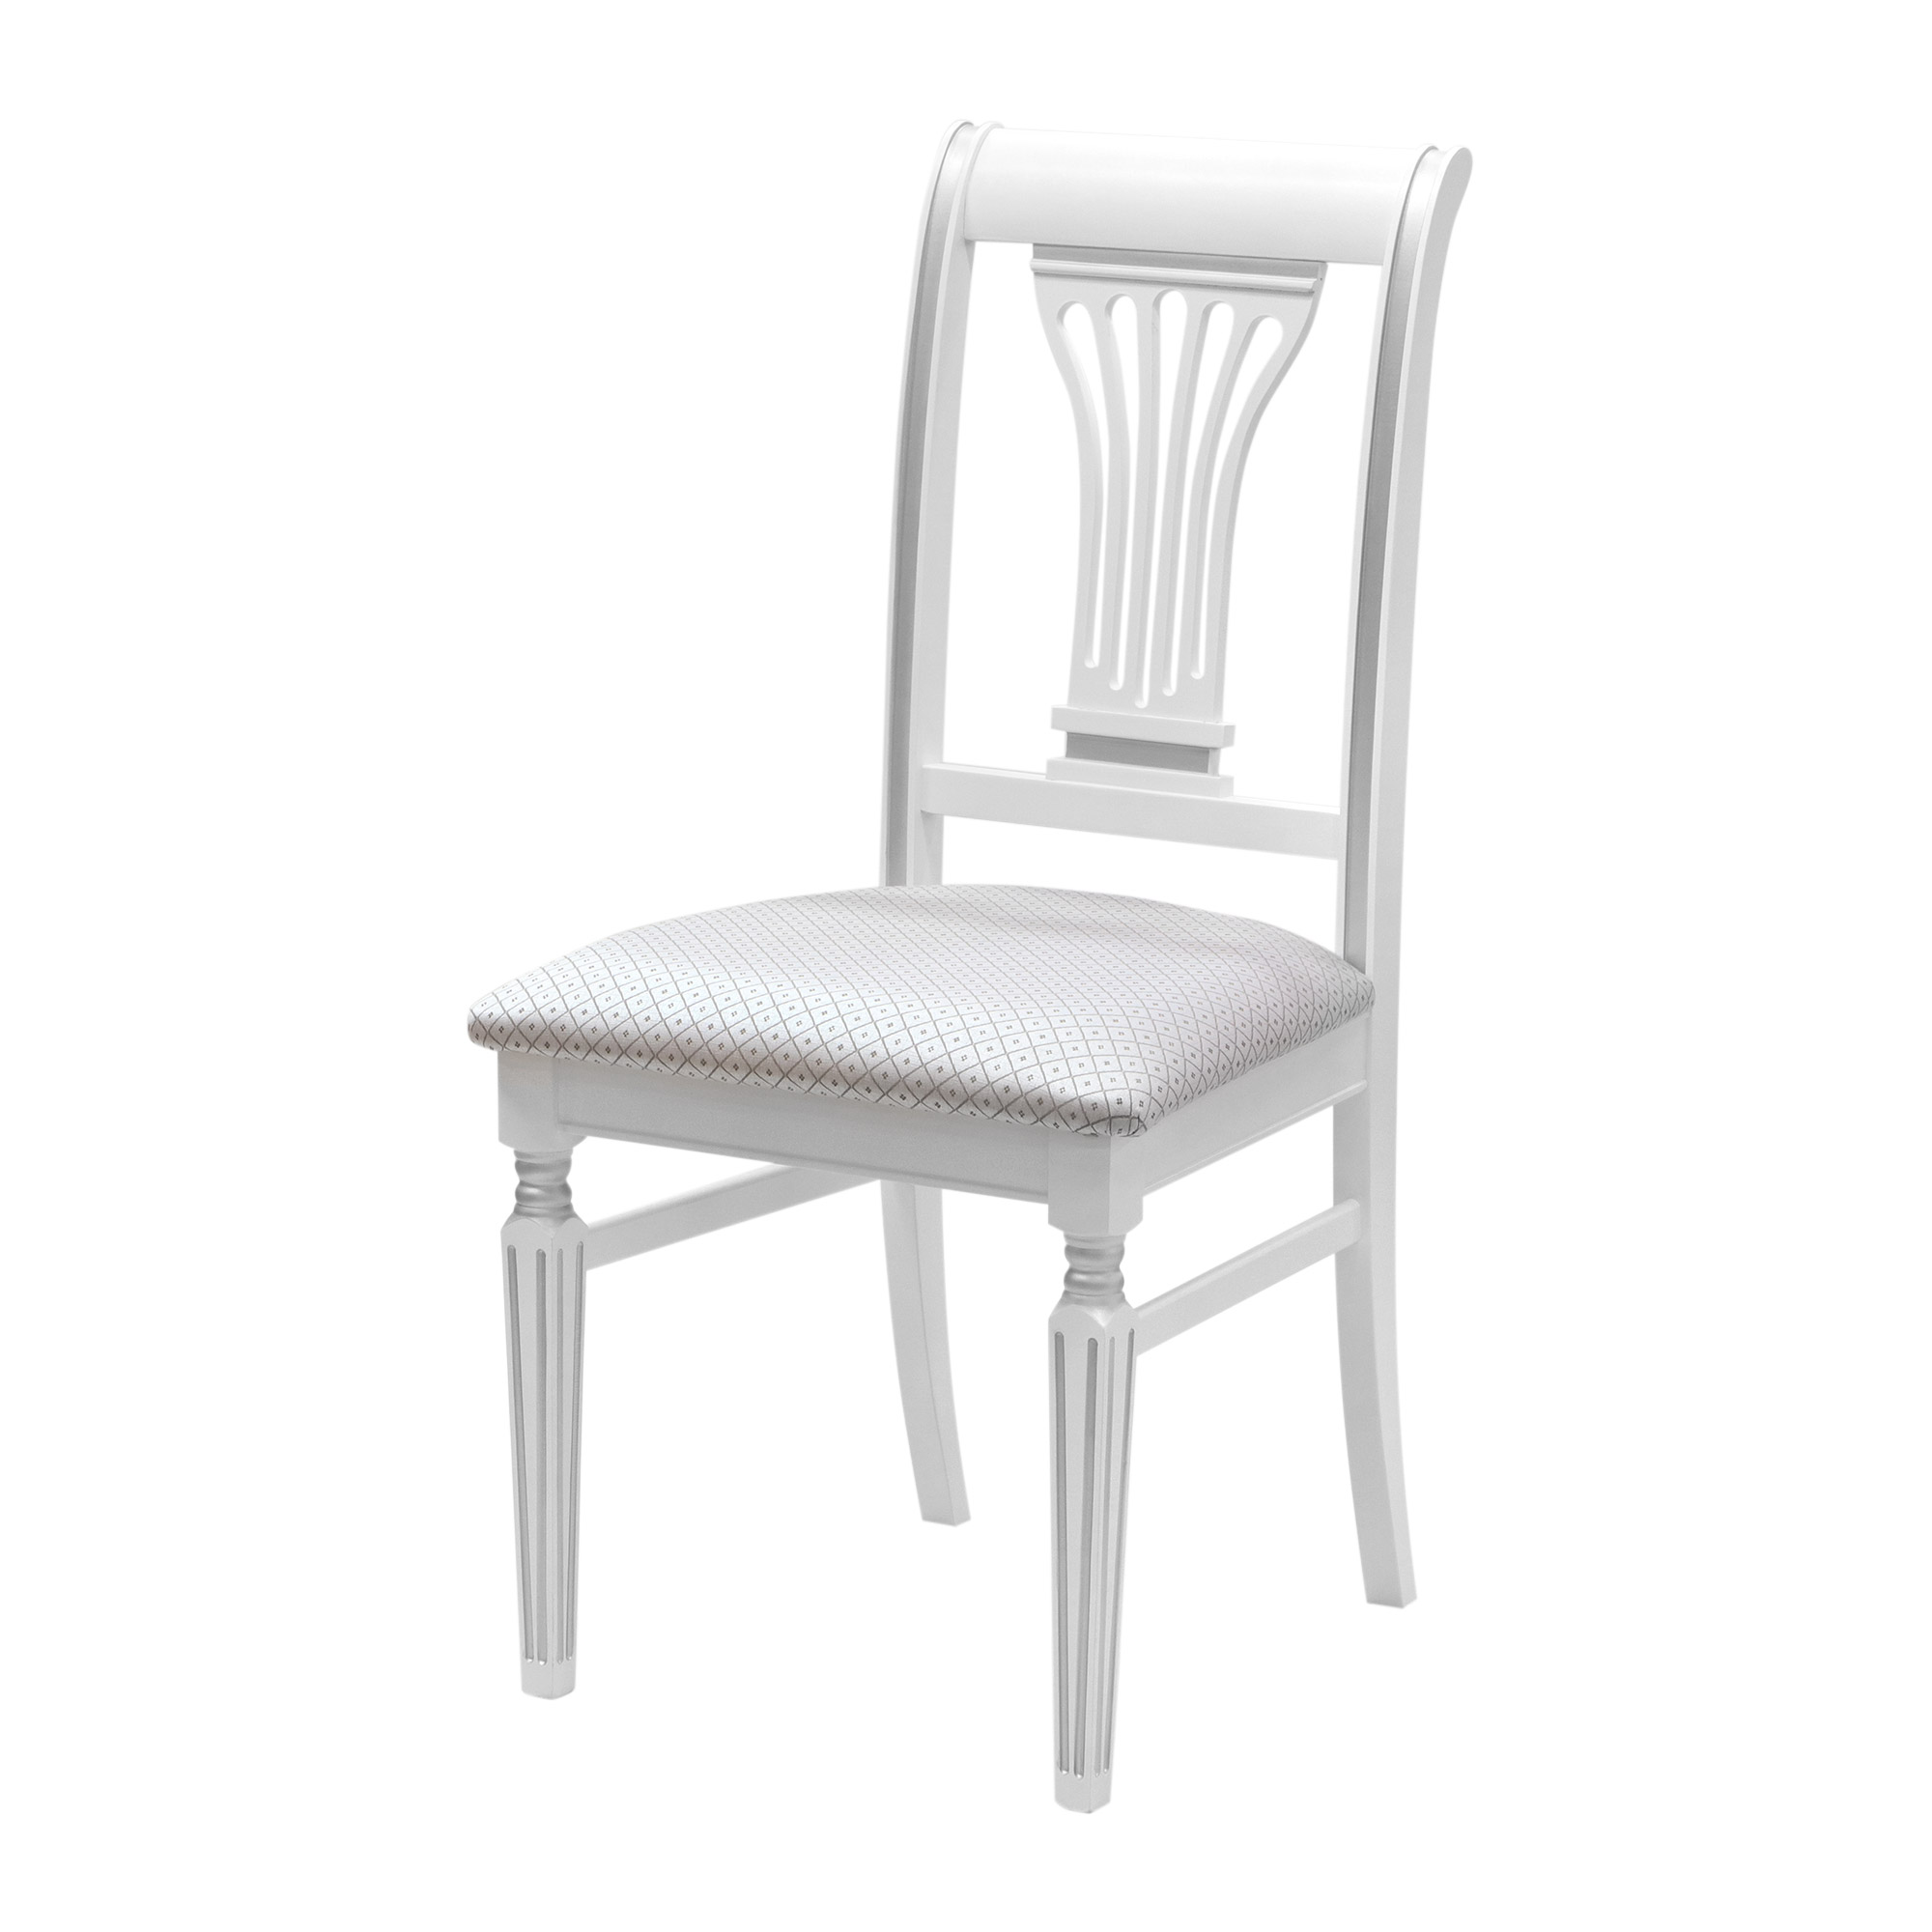 стул белый с патиной серебро